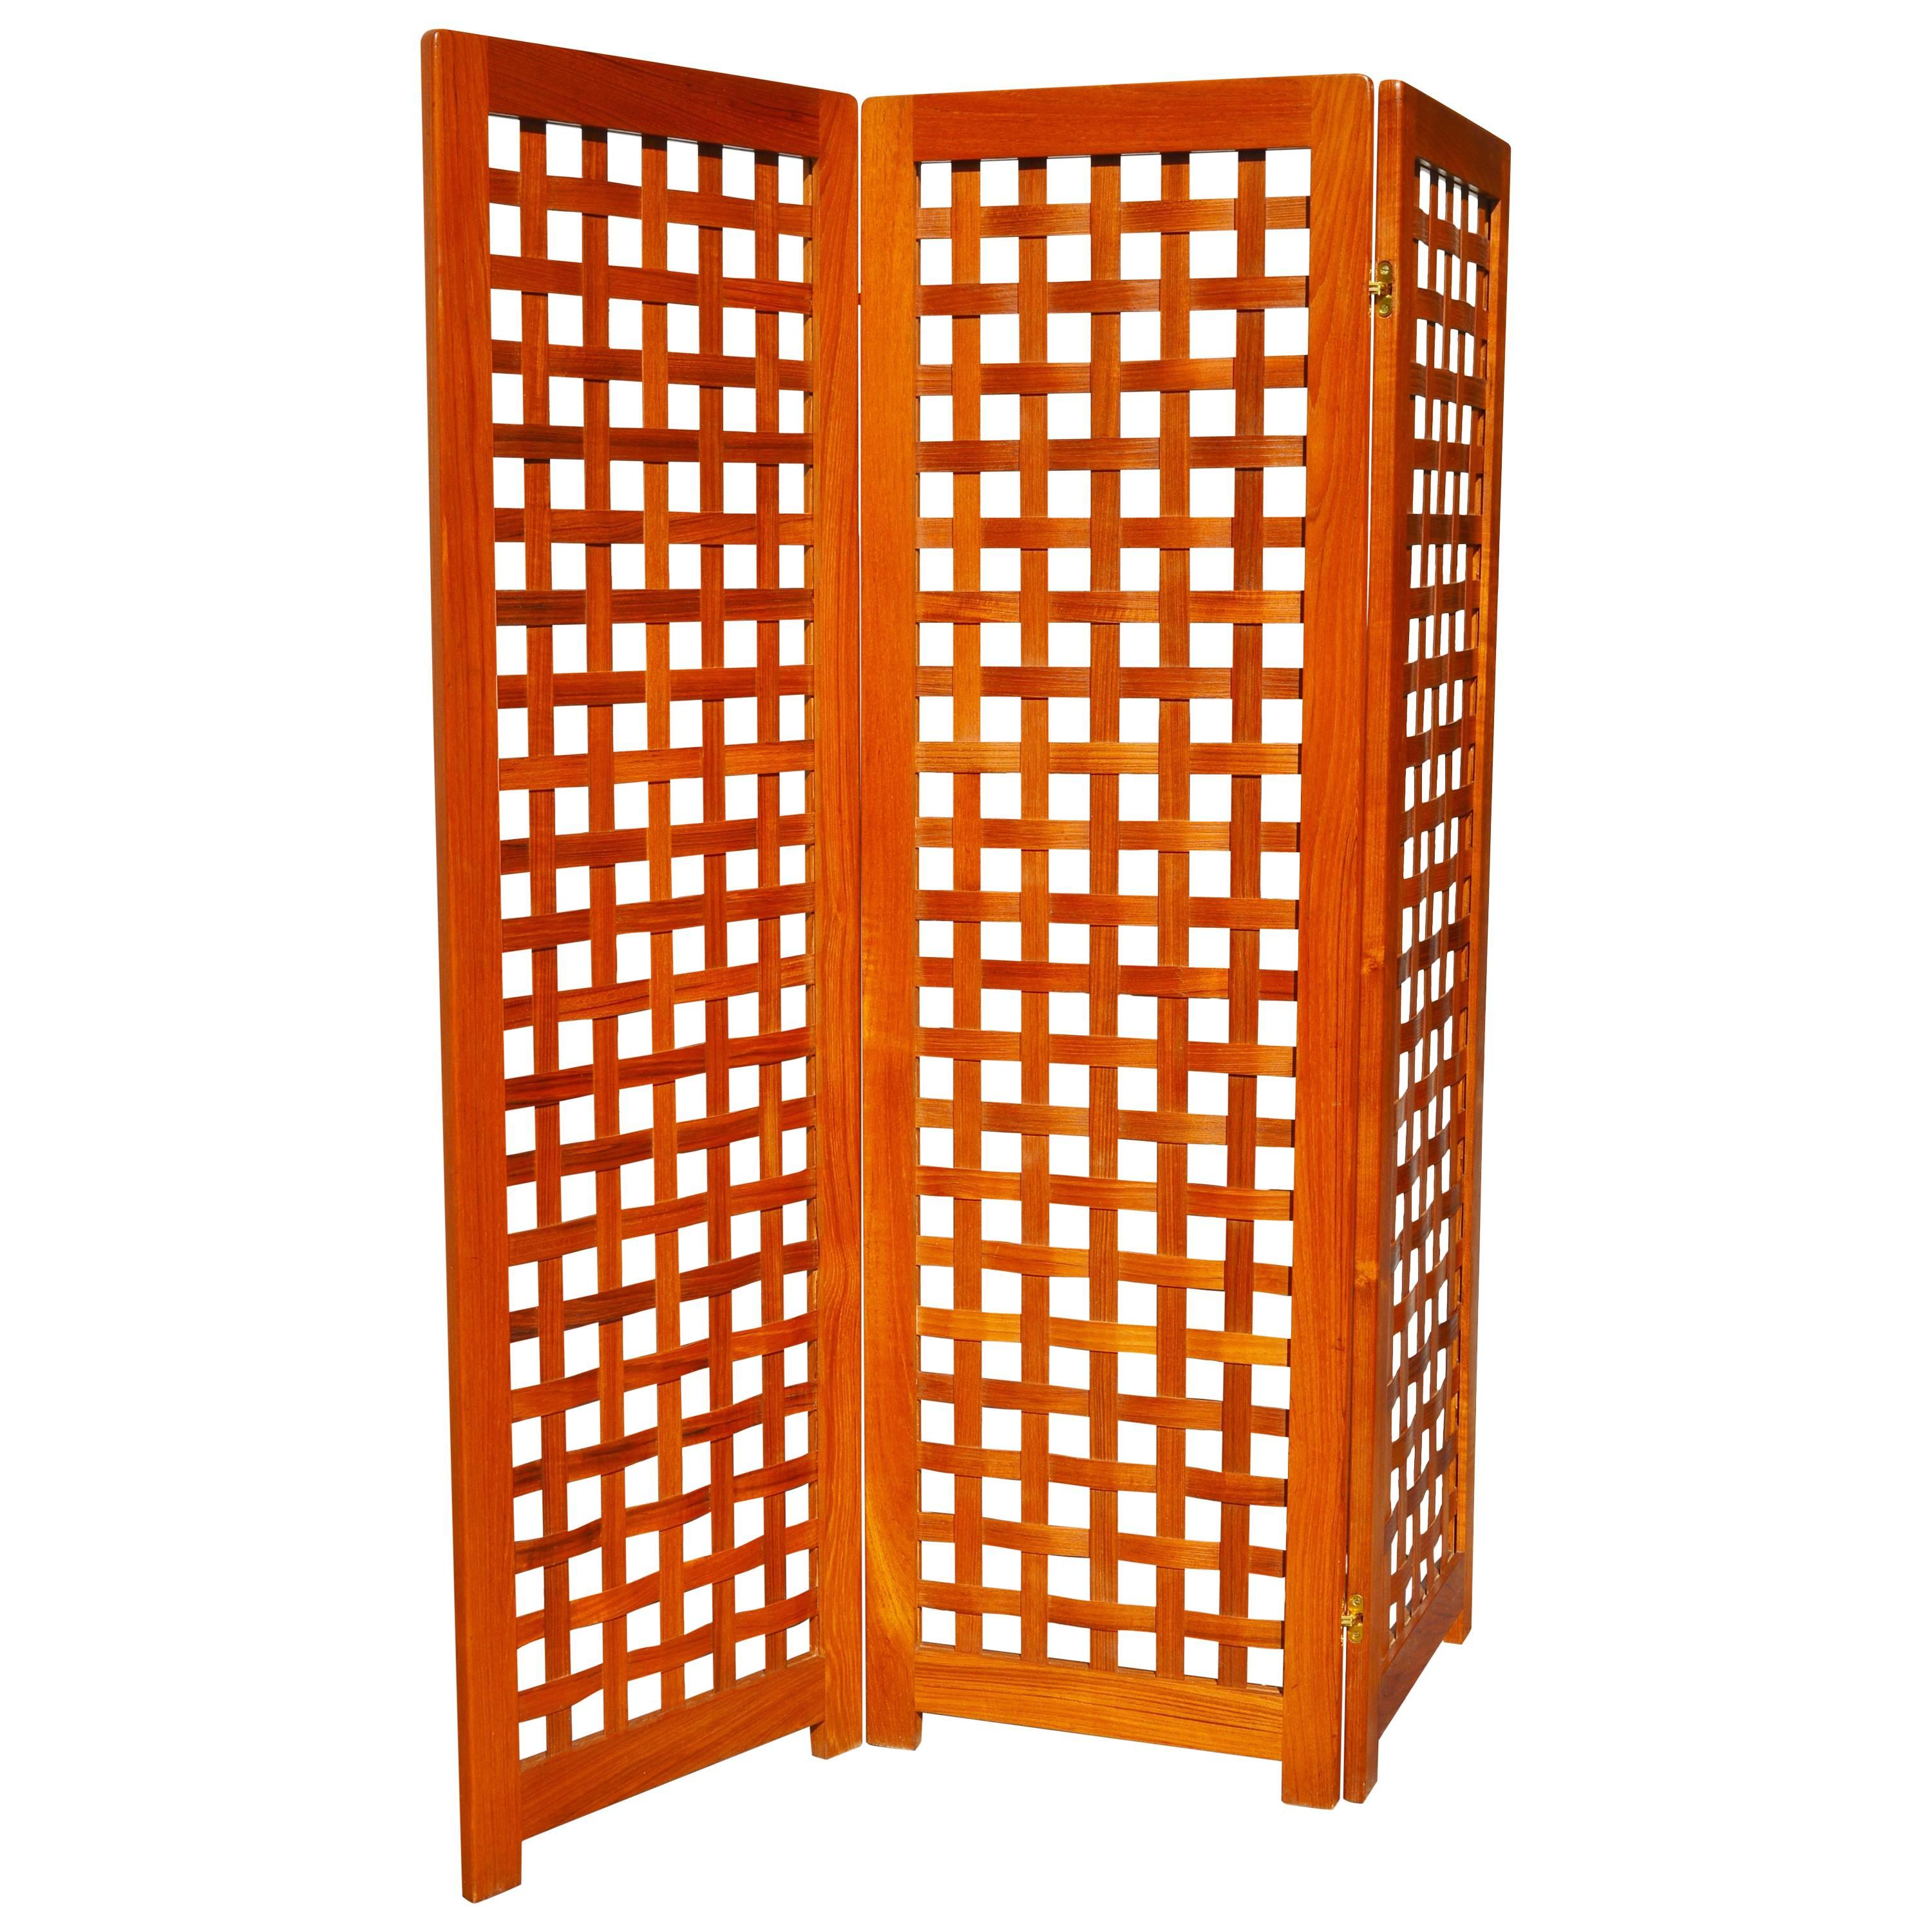 Danish Modern Teak Tri-Fold Screen or Room Divider with Basket Weave Design